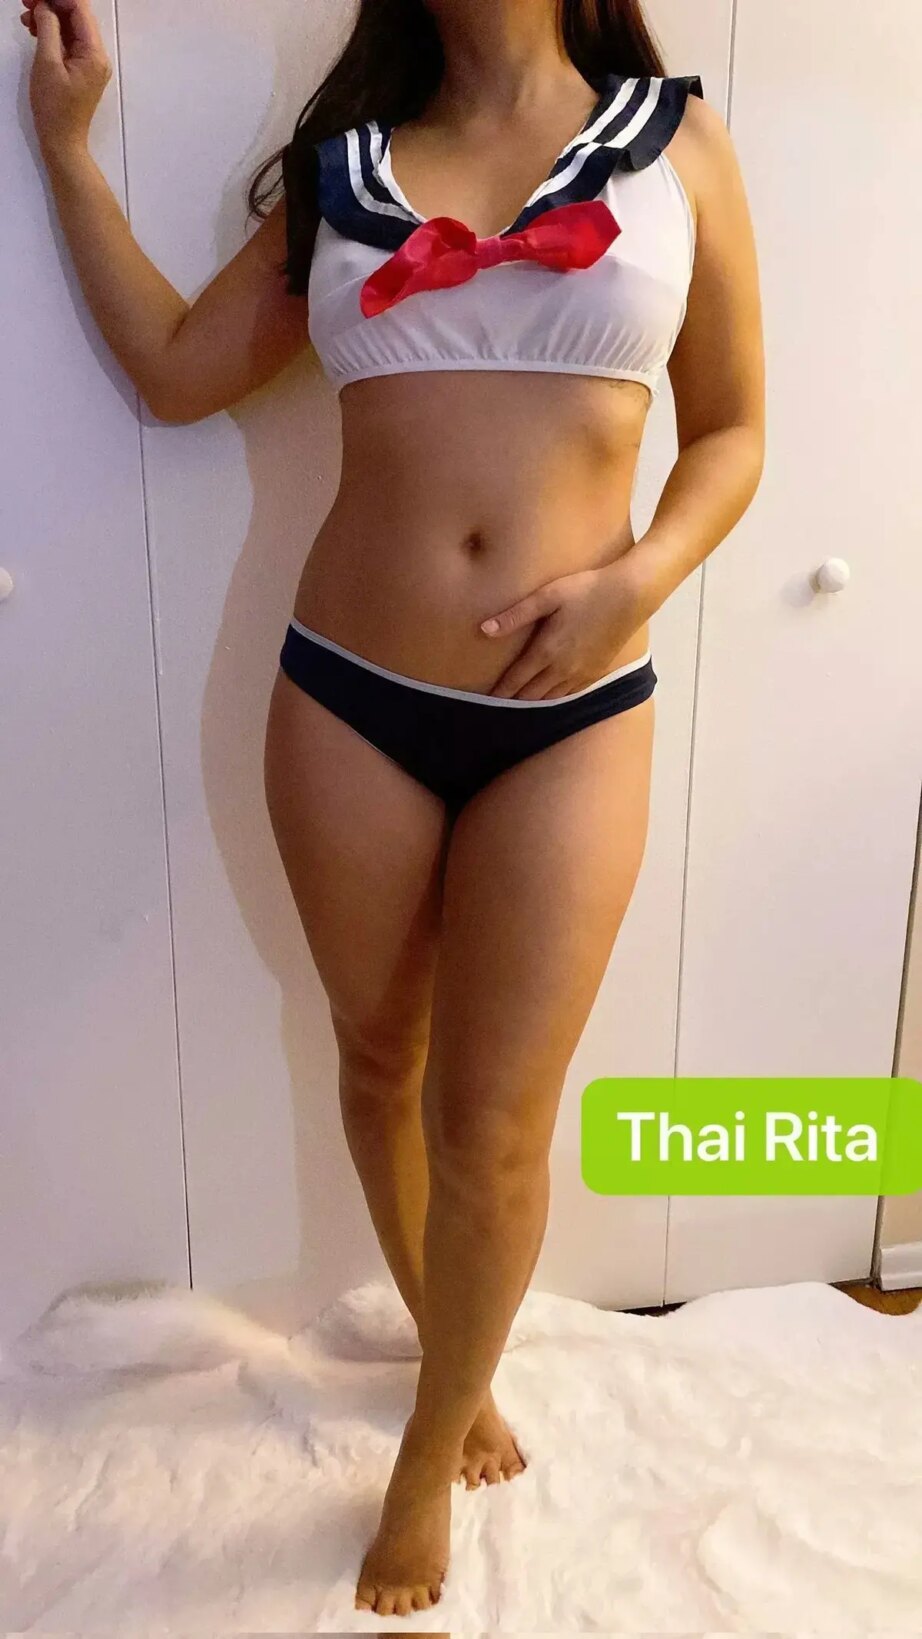 Escort - Thai Rita - Queens